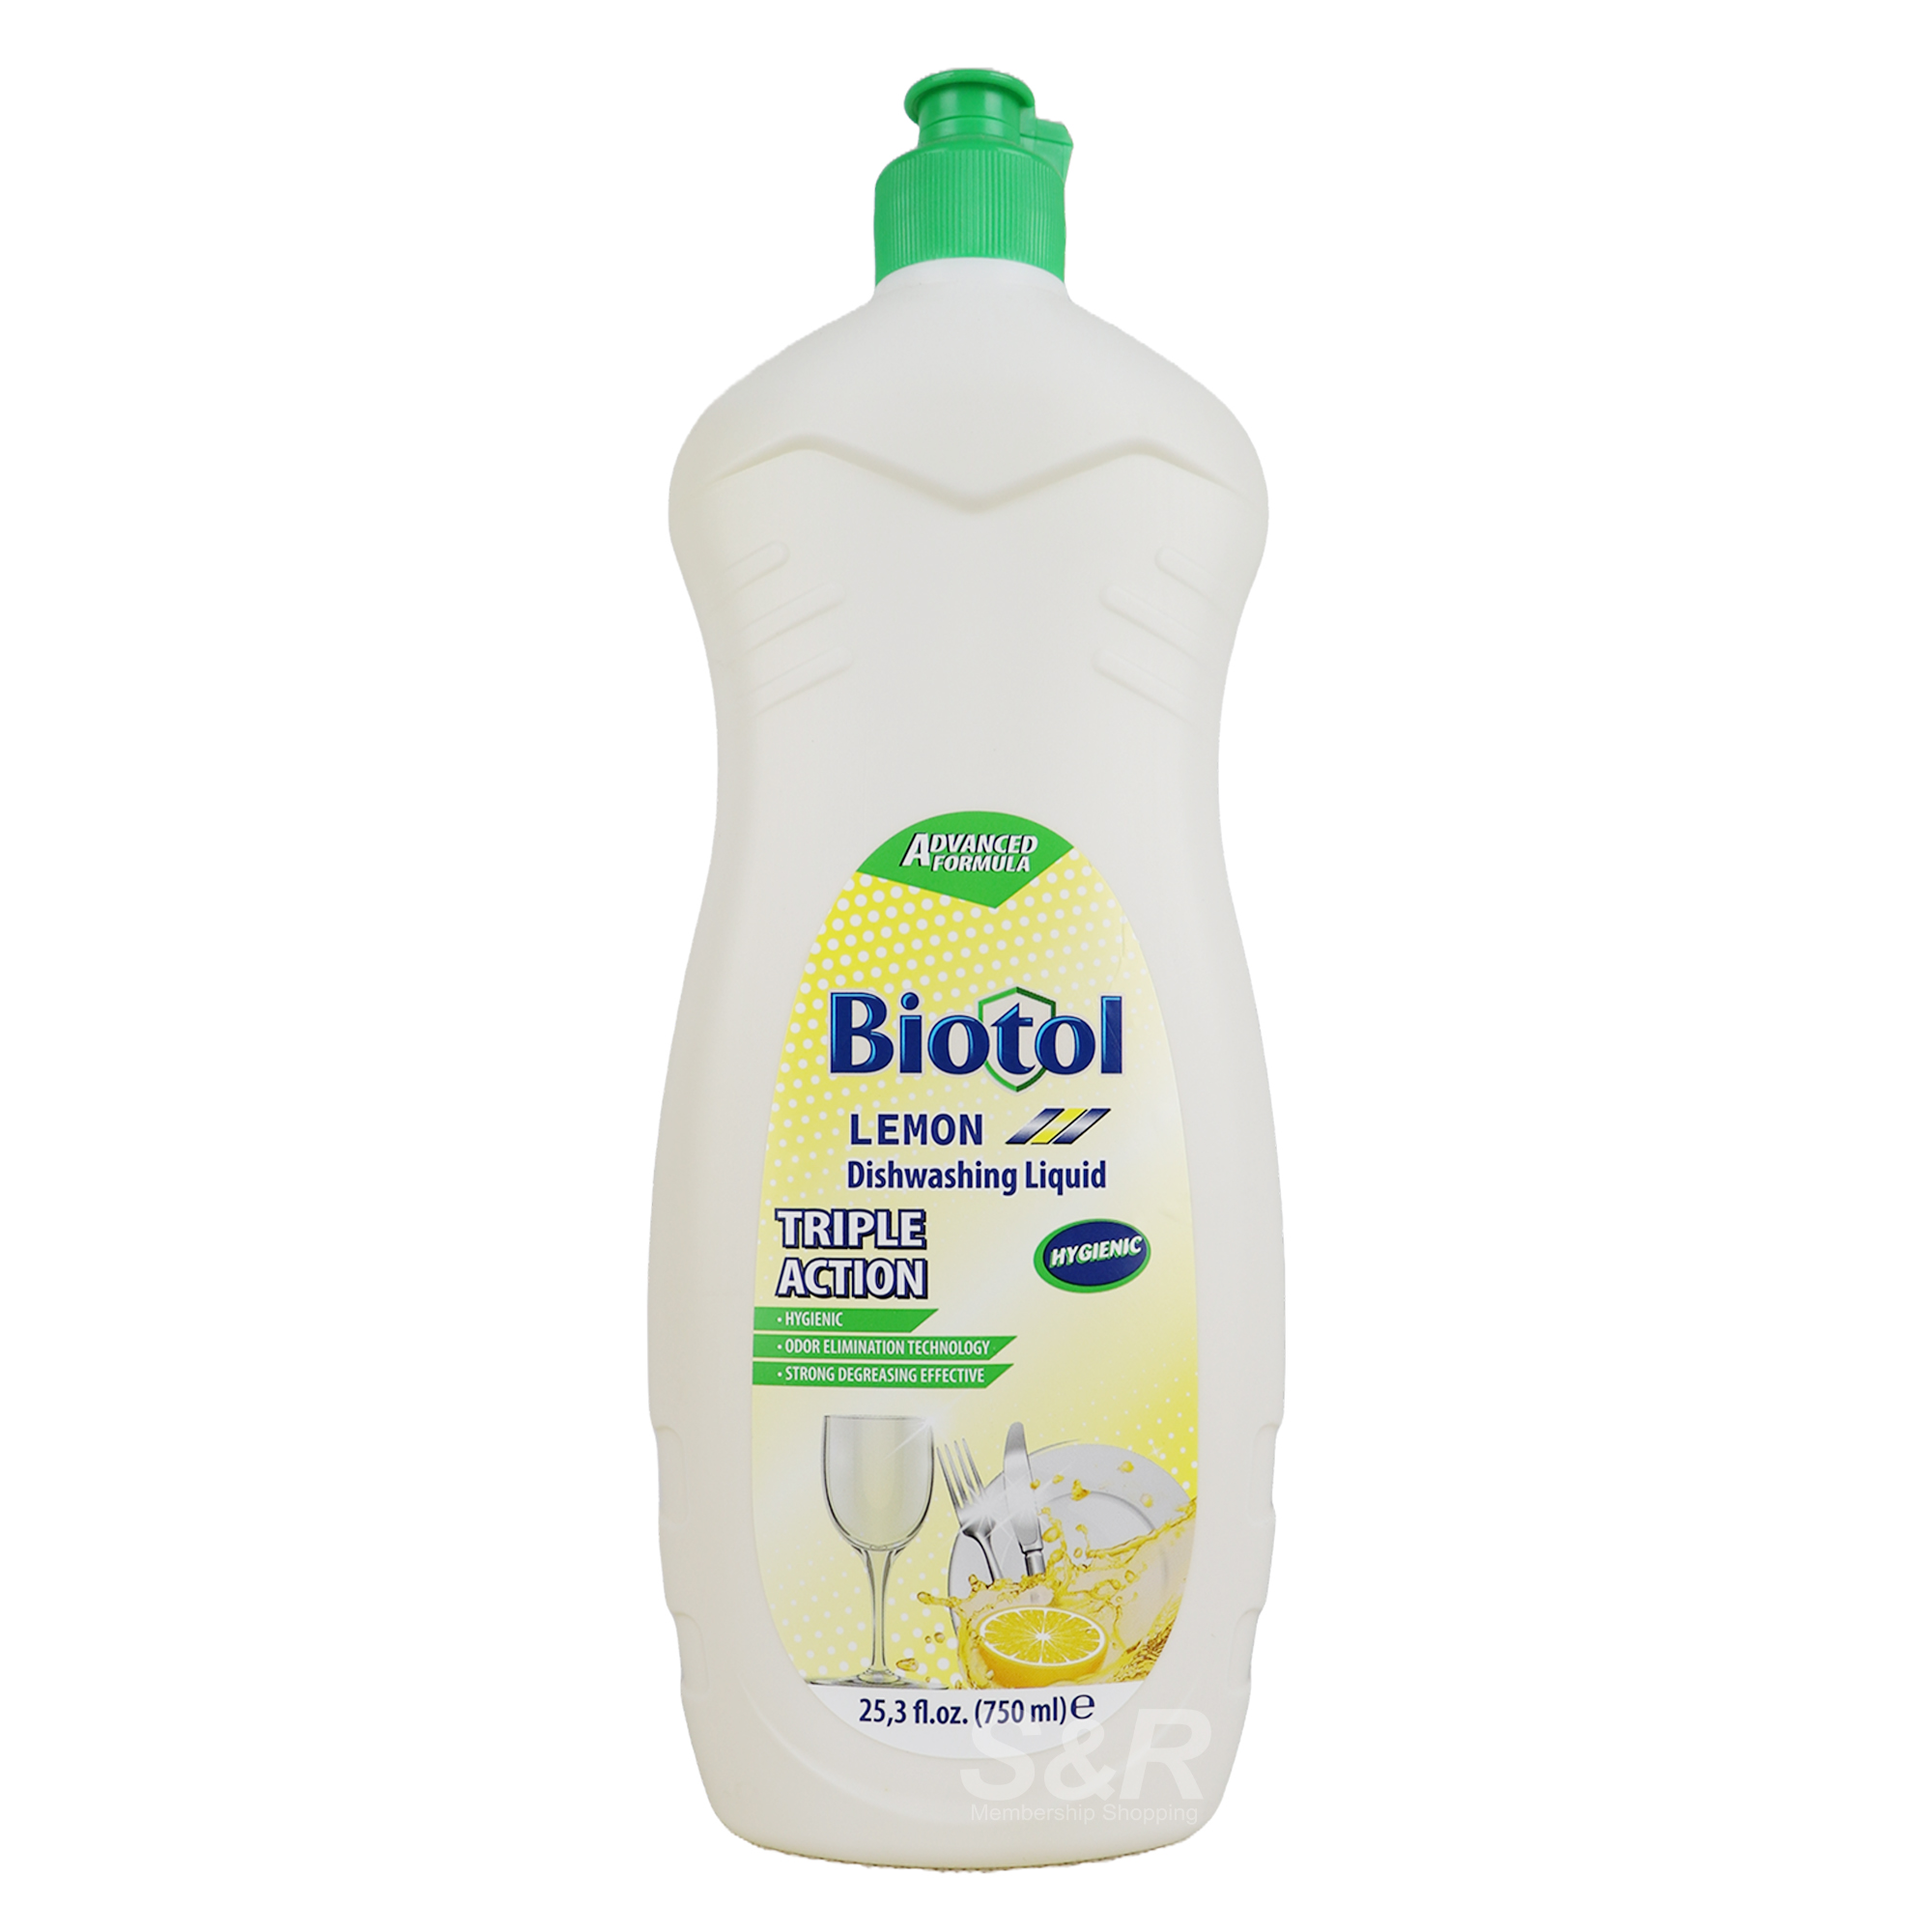 Biotol Lemon Dishwashing Liquid 750mL